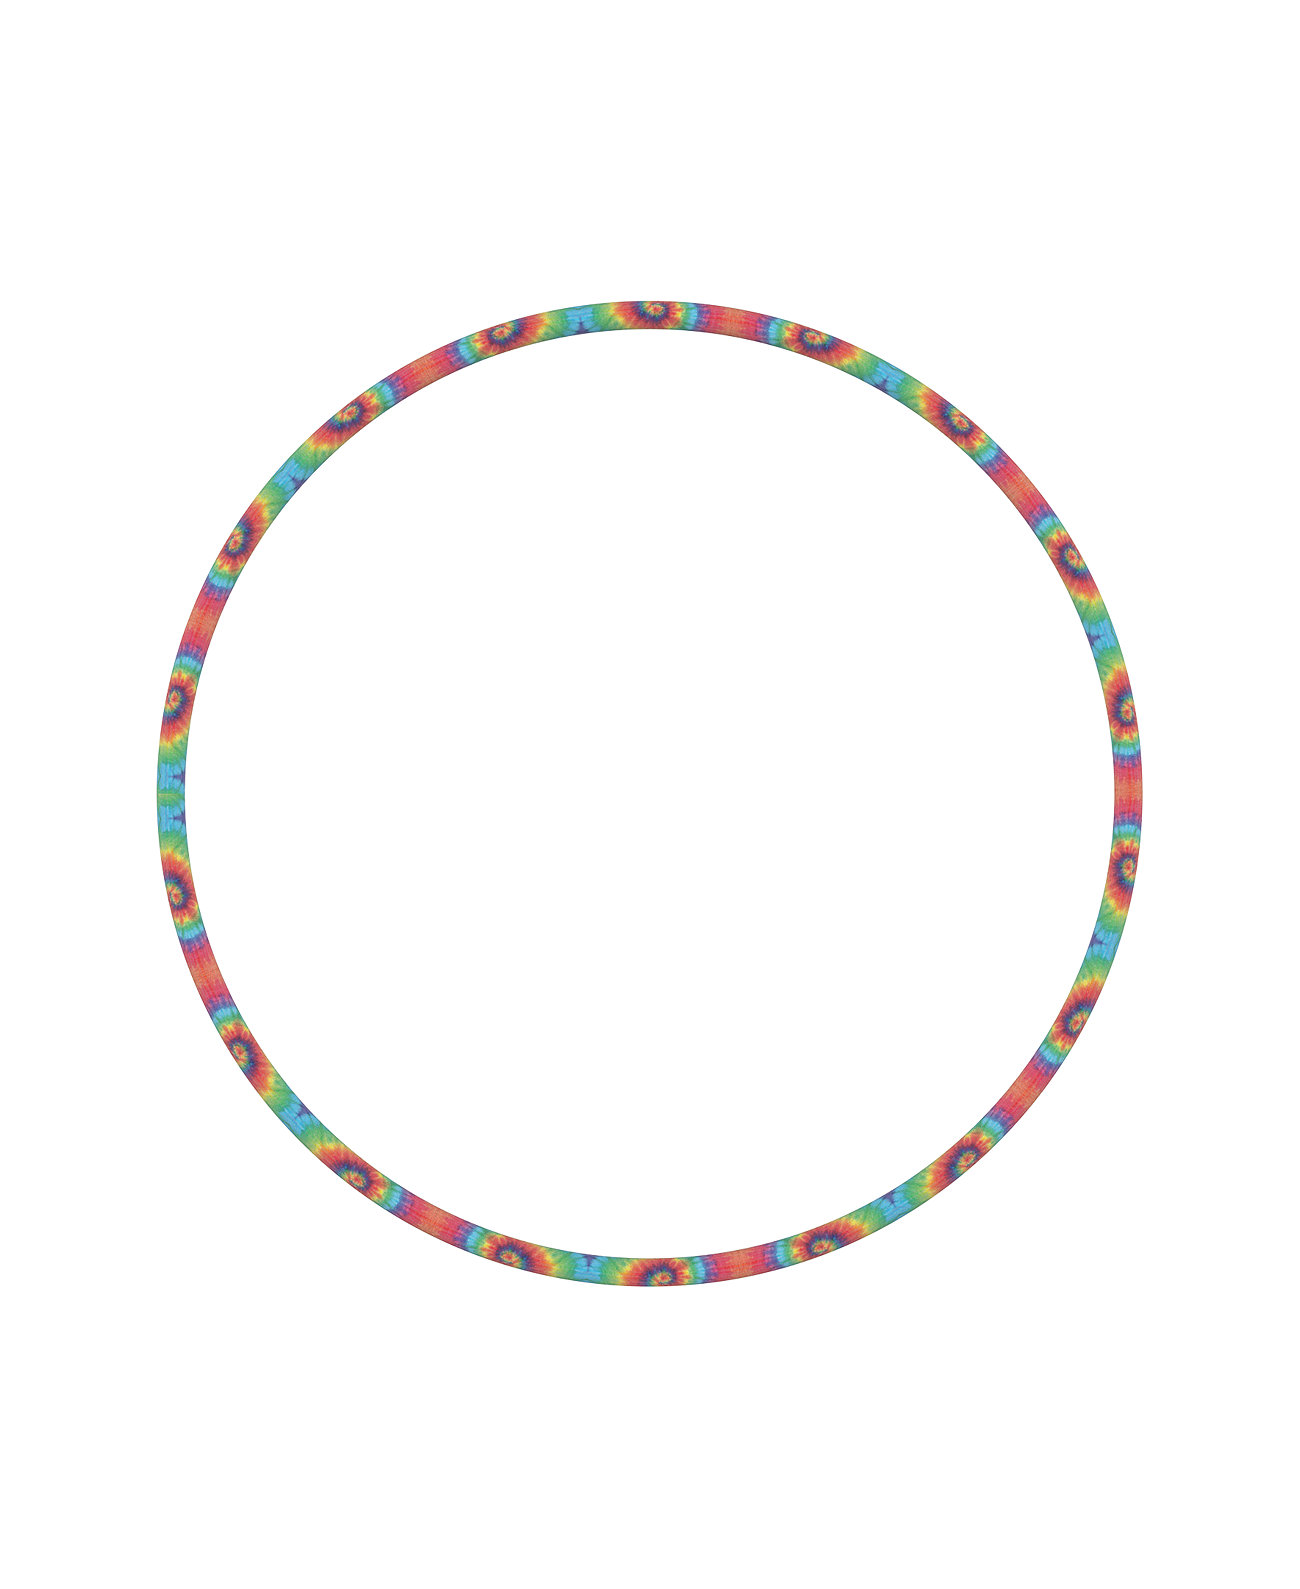 Светодиодный обруч Rainbow, созданный для Macy's GENESIS